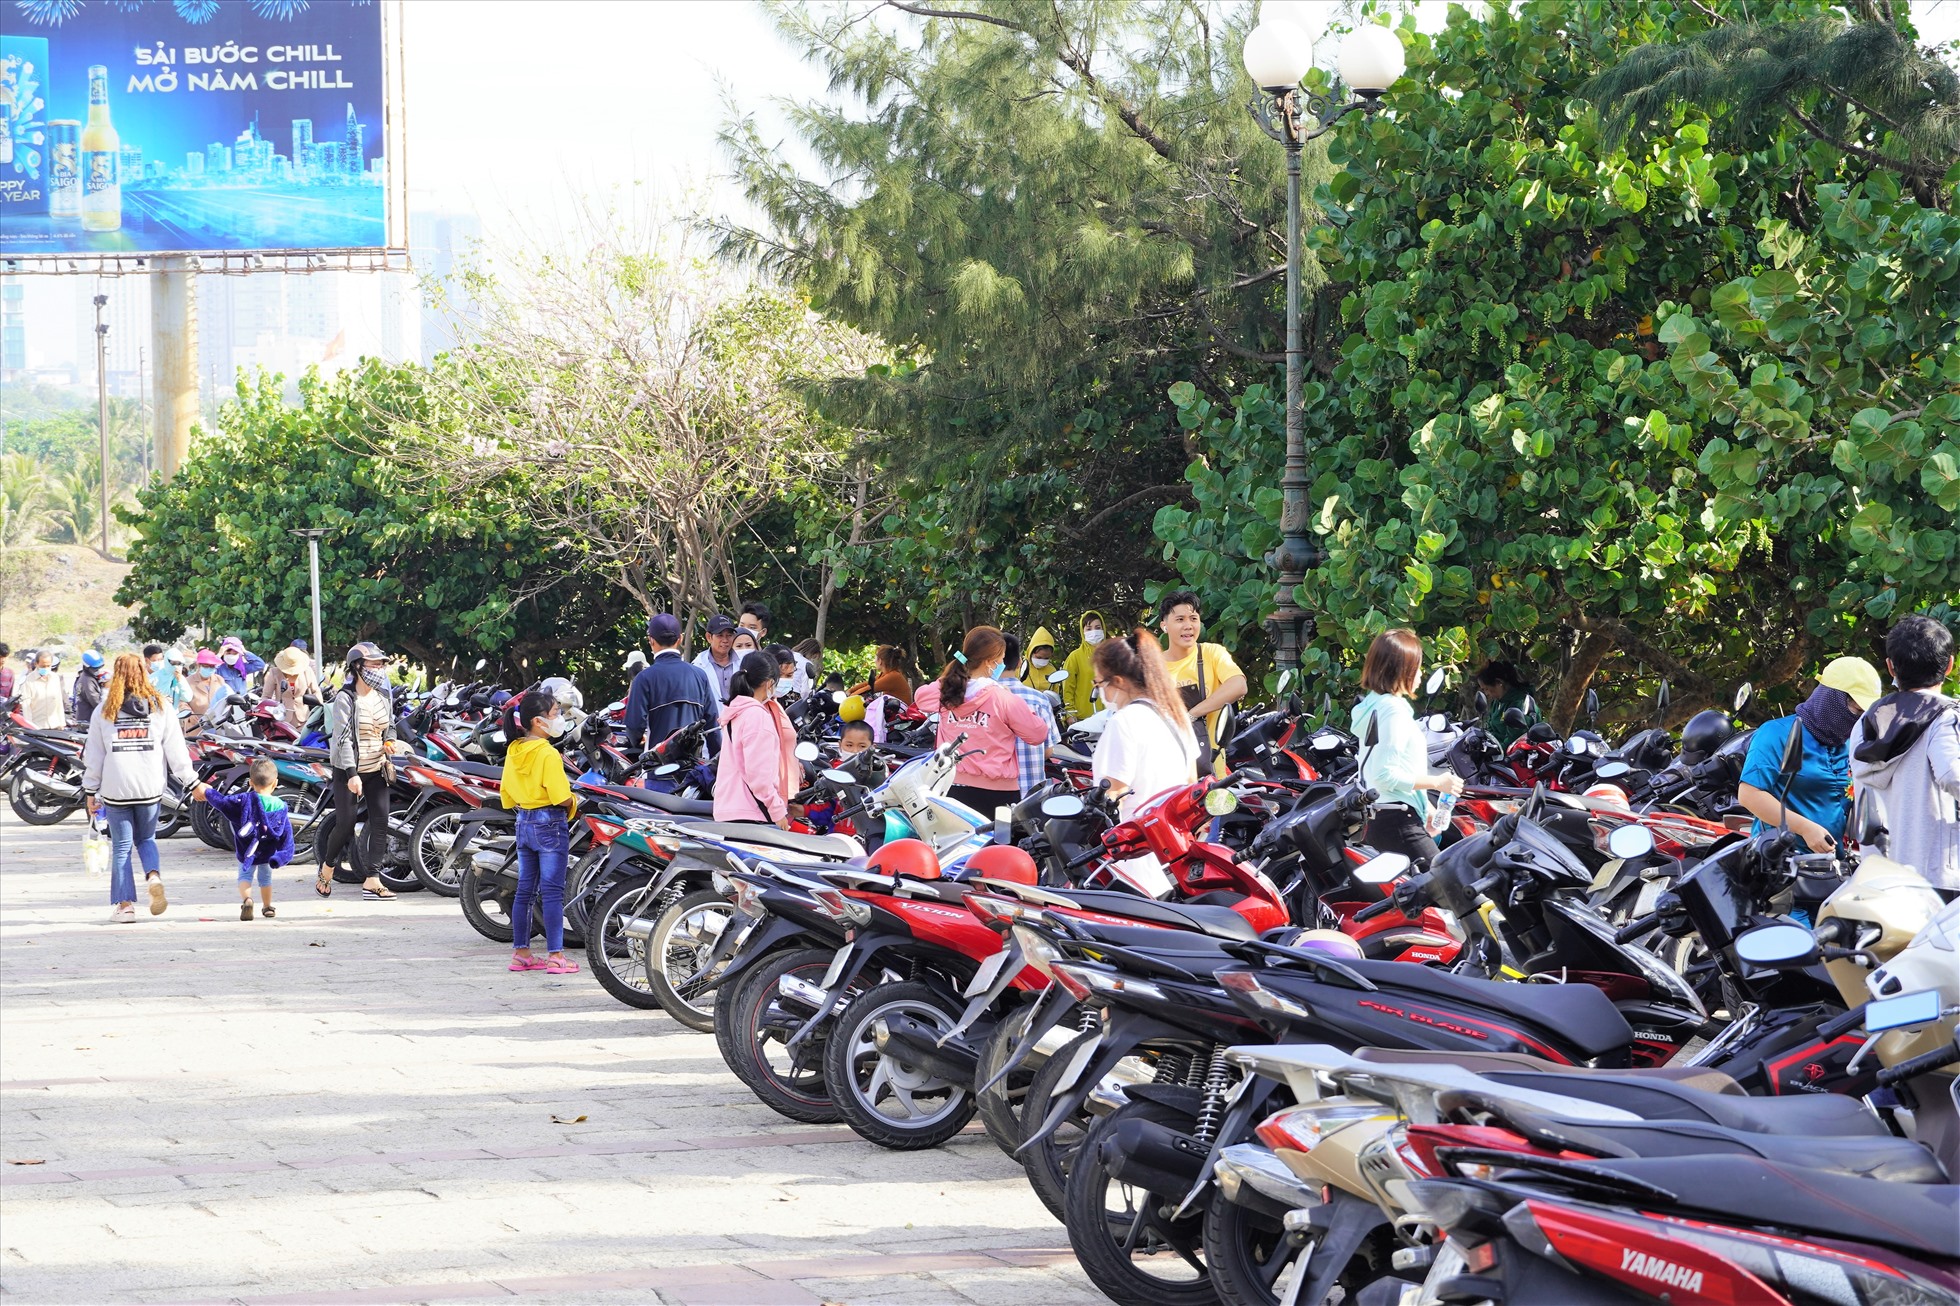 Thu phí đến 10.000 đồng/1 xe máy trong dịp Tết nhưng bãi xe vẫn đông đúc, nhộn nhịp người vào ra. Ảnh: Thành An